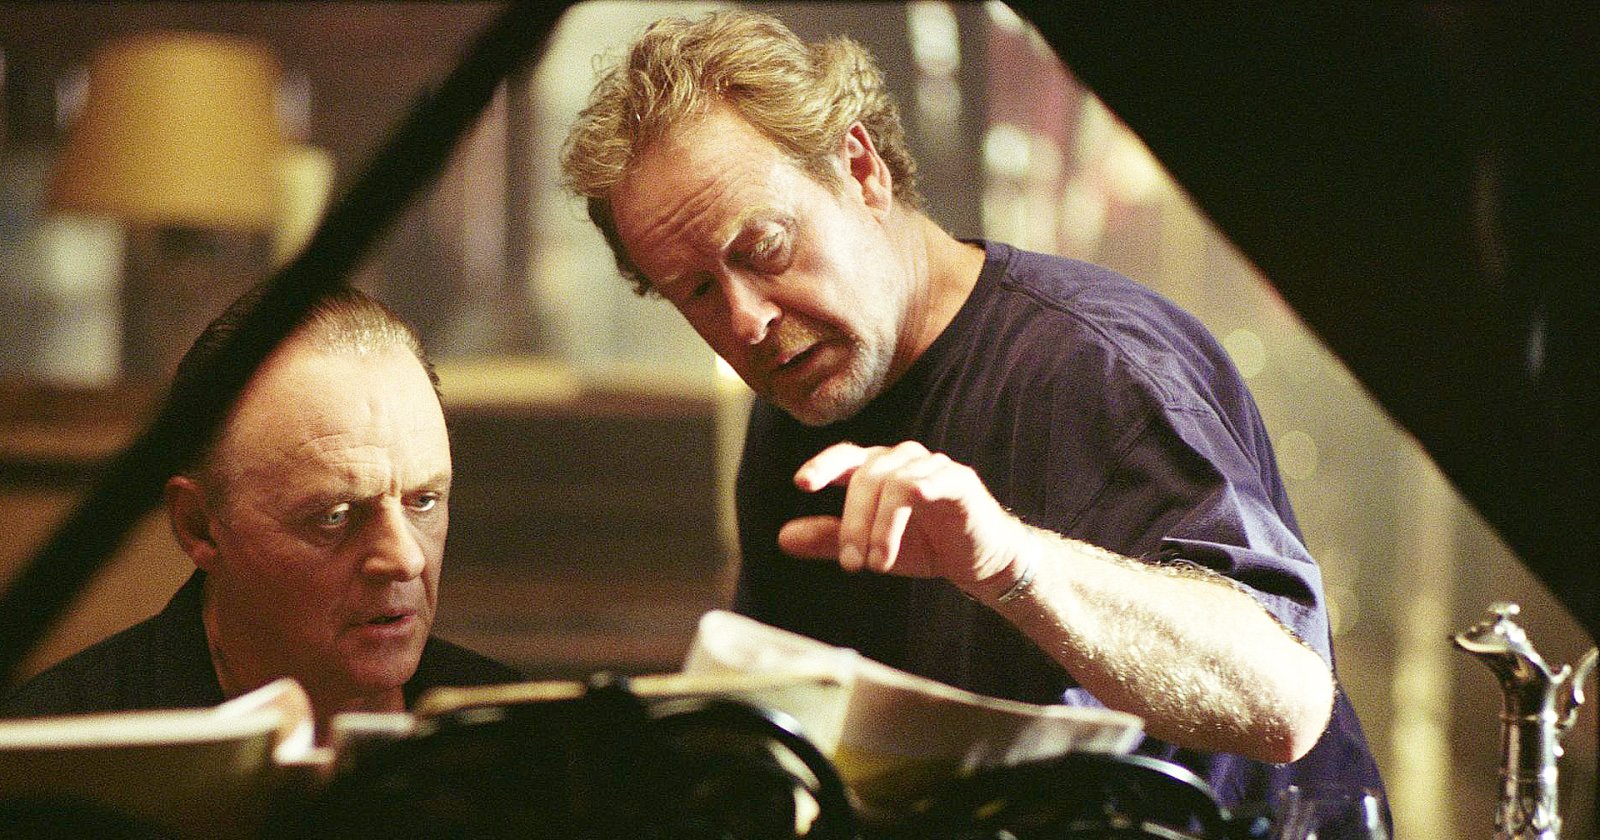 Ridley Scott บอกปัดกำกับหนังซูเปอร์ฮีโร เพราะเชื่อว่า ‘Alien’ และ ‘Gladiator’ เป็นหนังซูเปอร์ฮีโรที่ดีอยู่แล้ว